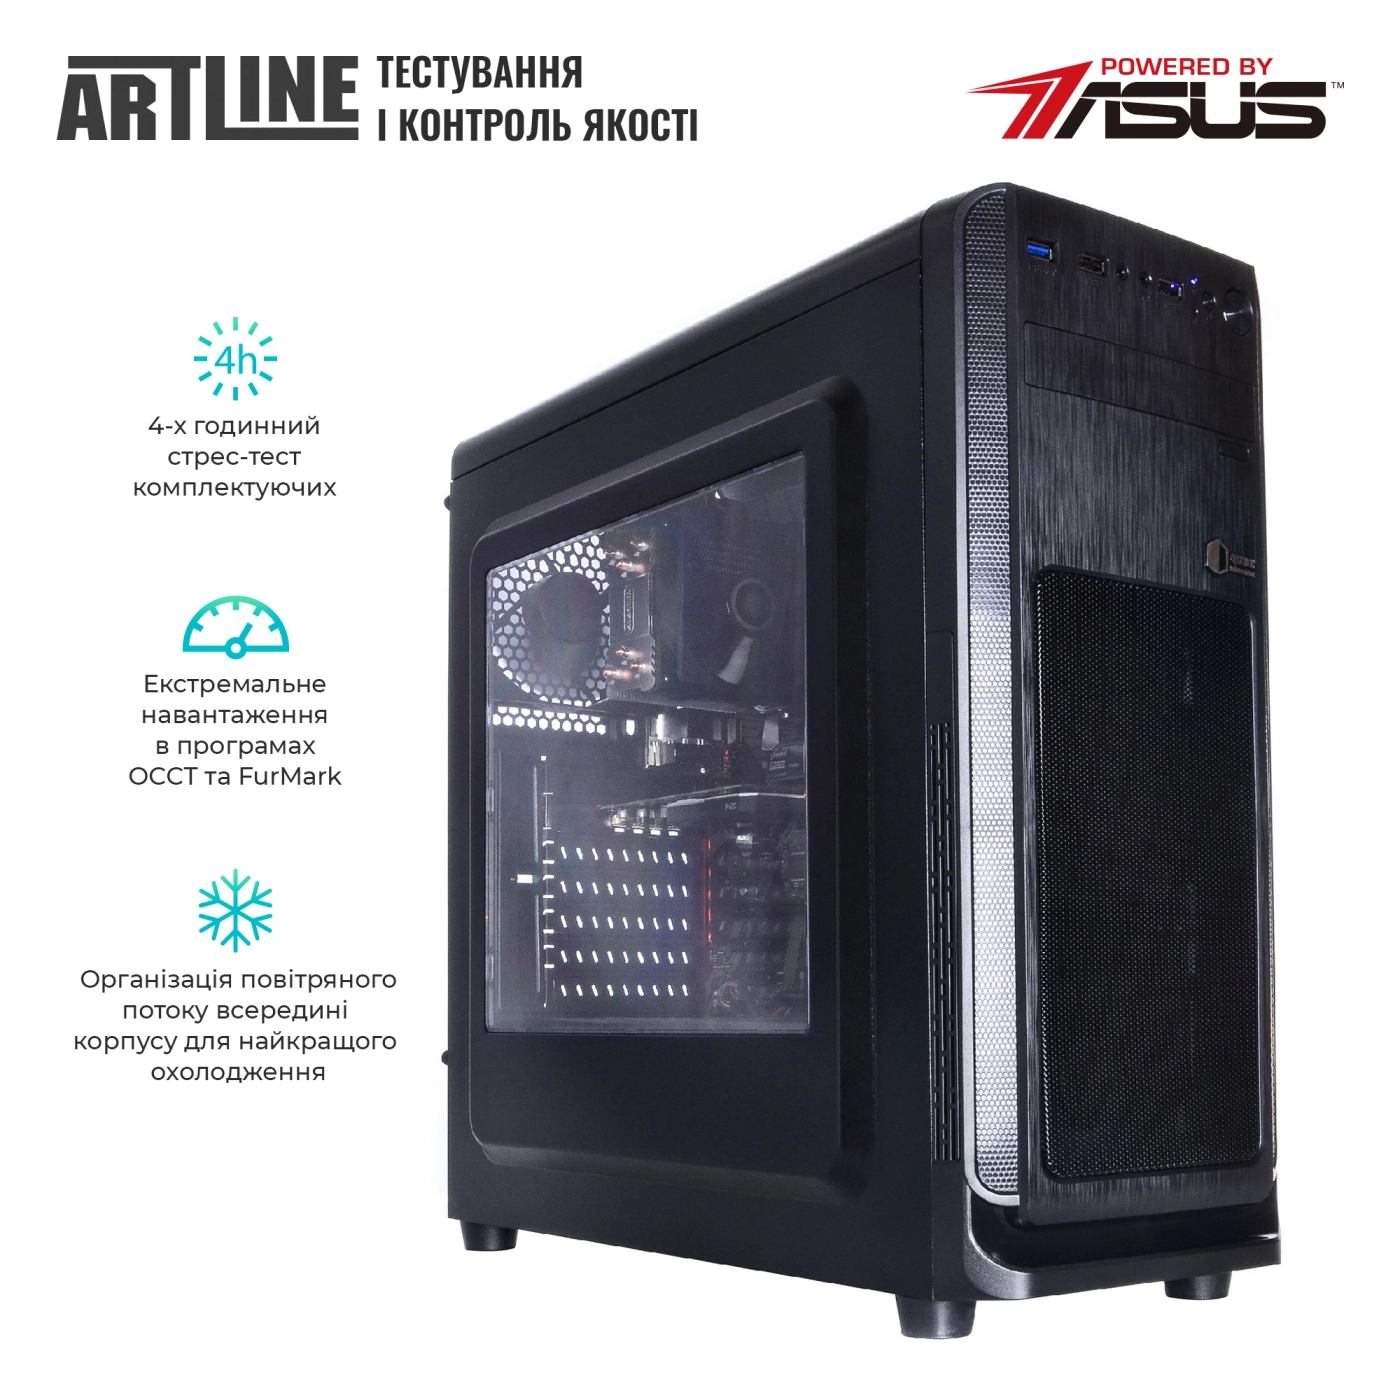 Купить Сервер ARTLINE Business T19v17 - фото 6